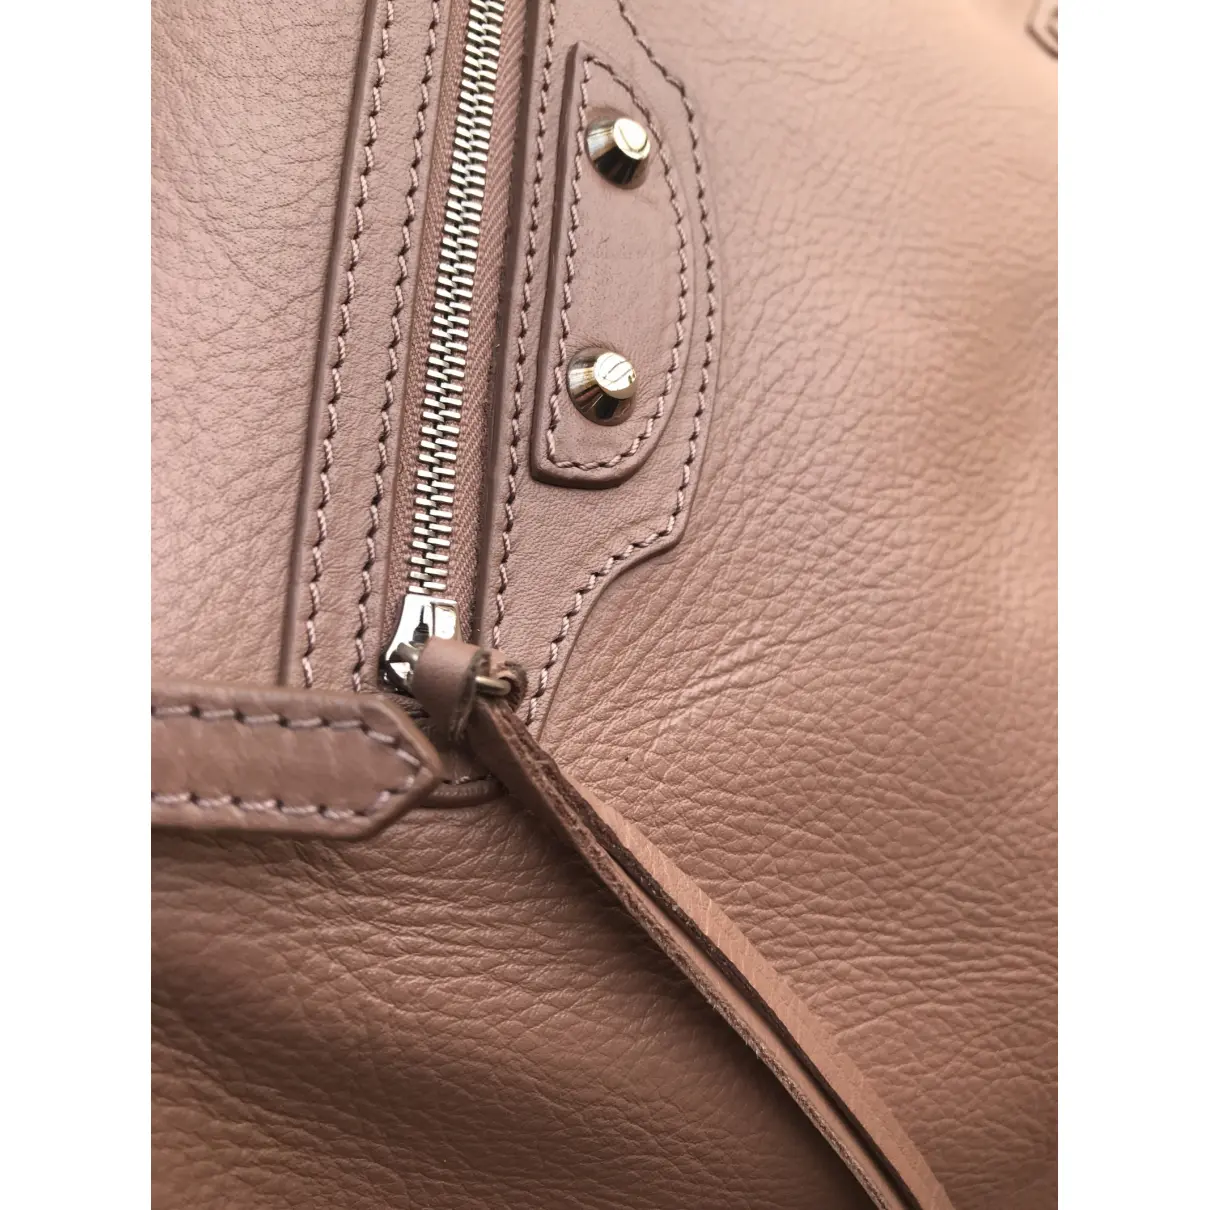 Papier leather handbag Balenciaga